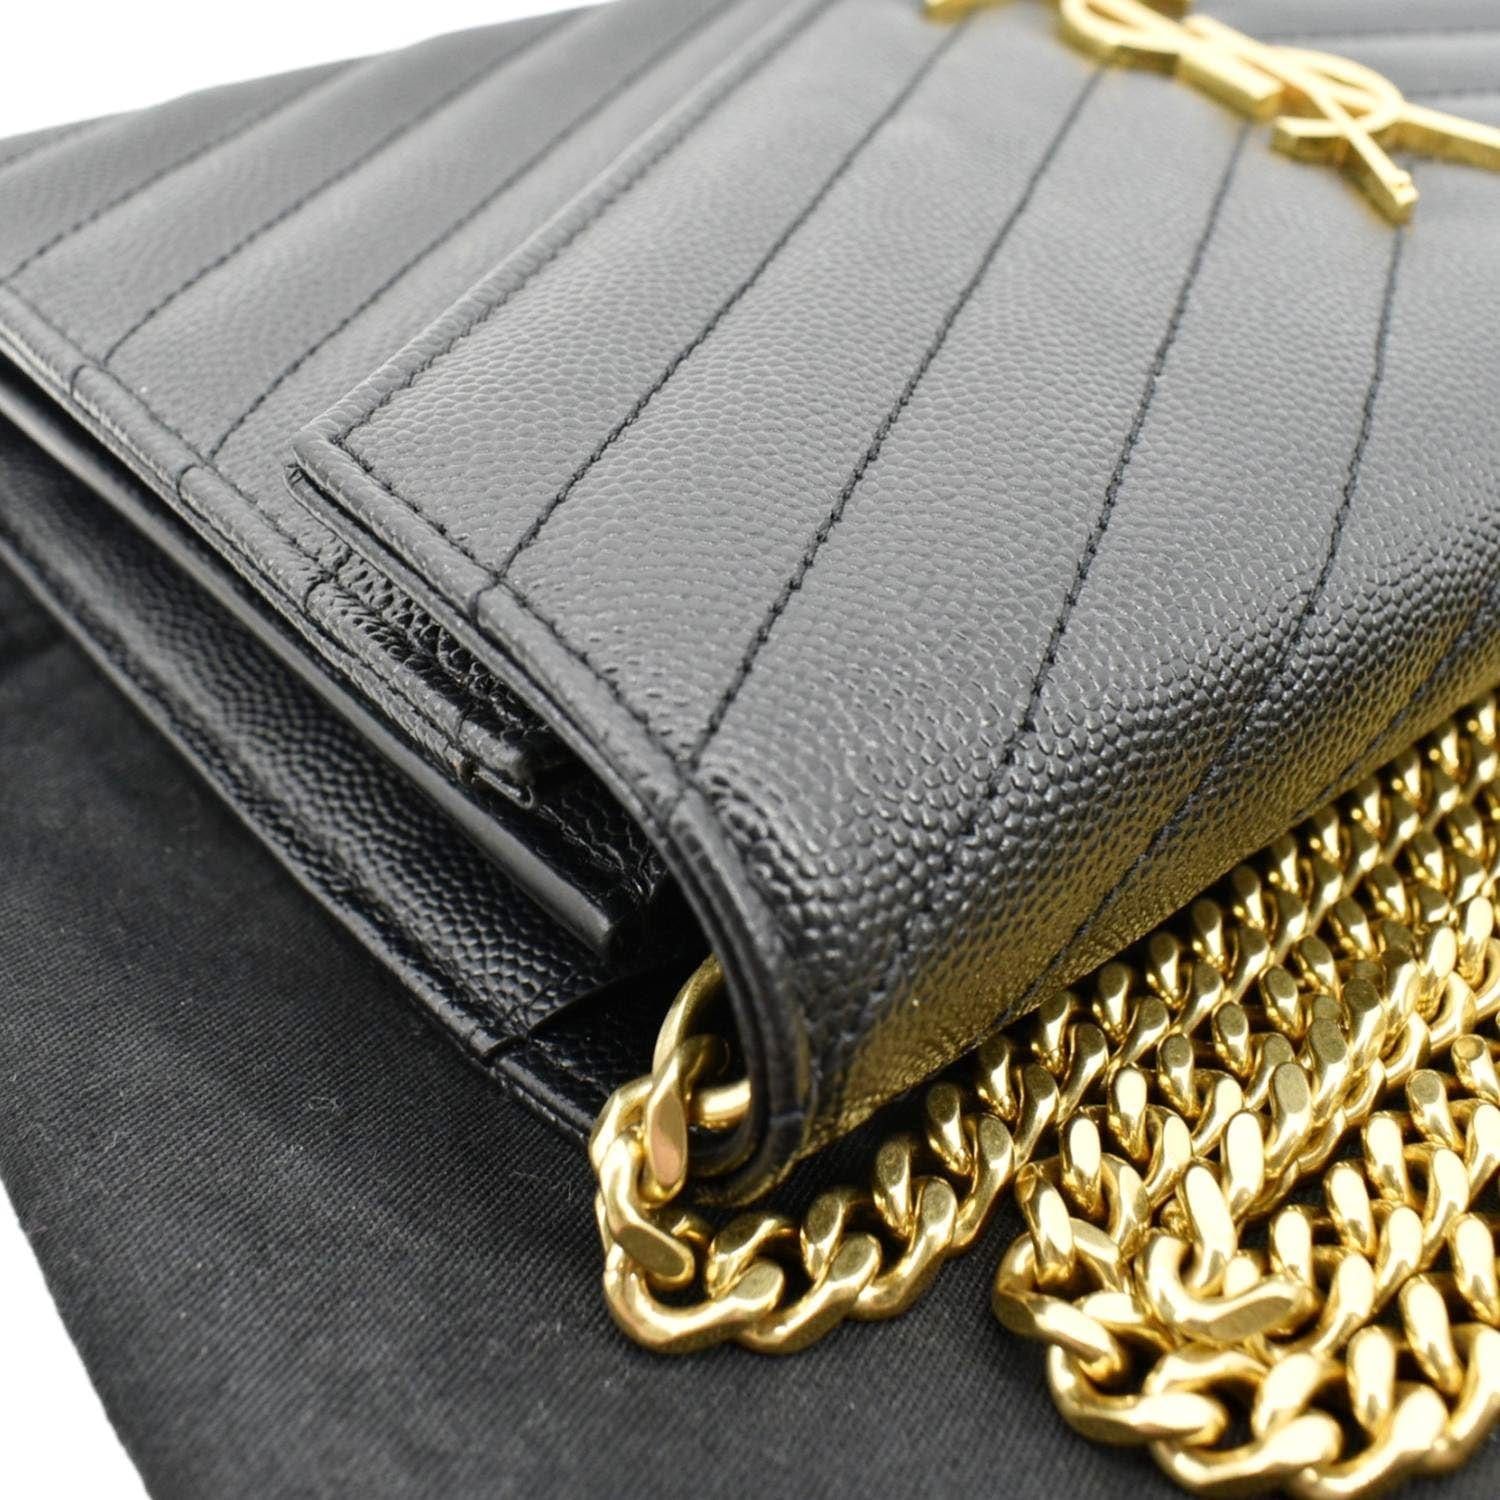 SAINT LAURENT PARIS Shoulder Bag 515822 Chain bag leather Black Silver –